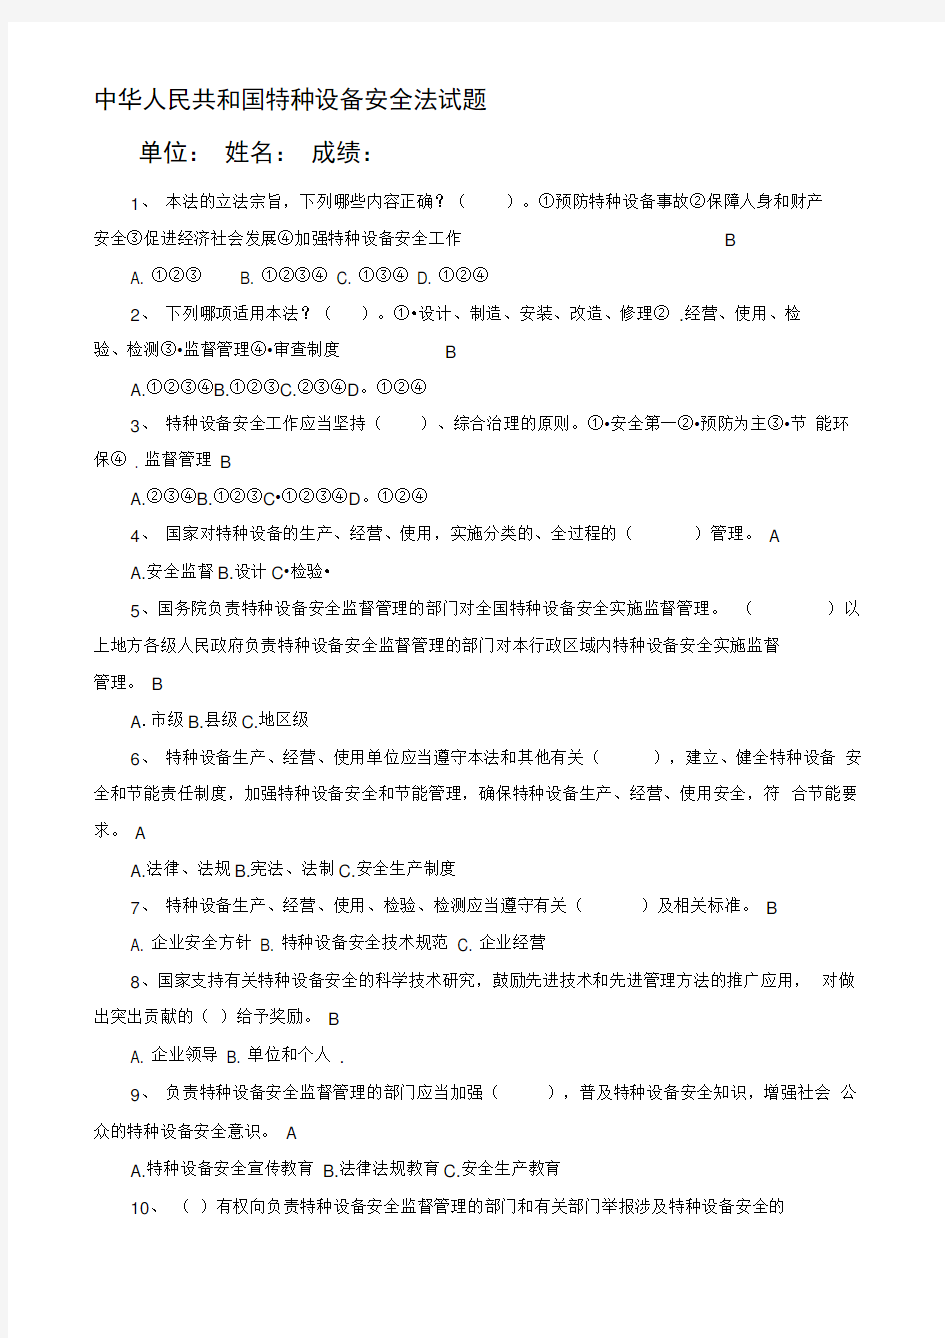 中华人民共和国特种设备安全法试题及答案(最全)